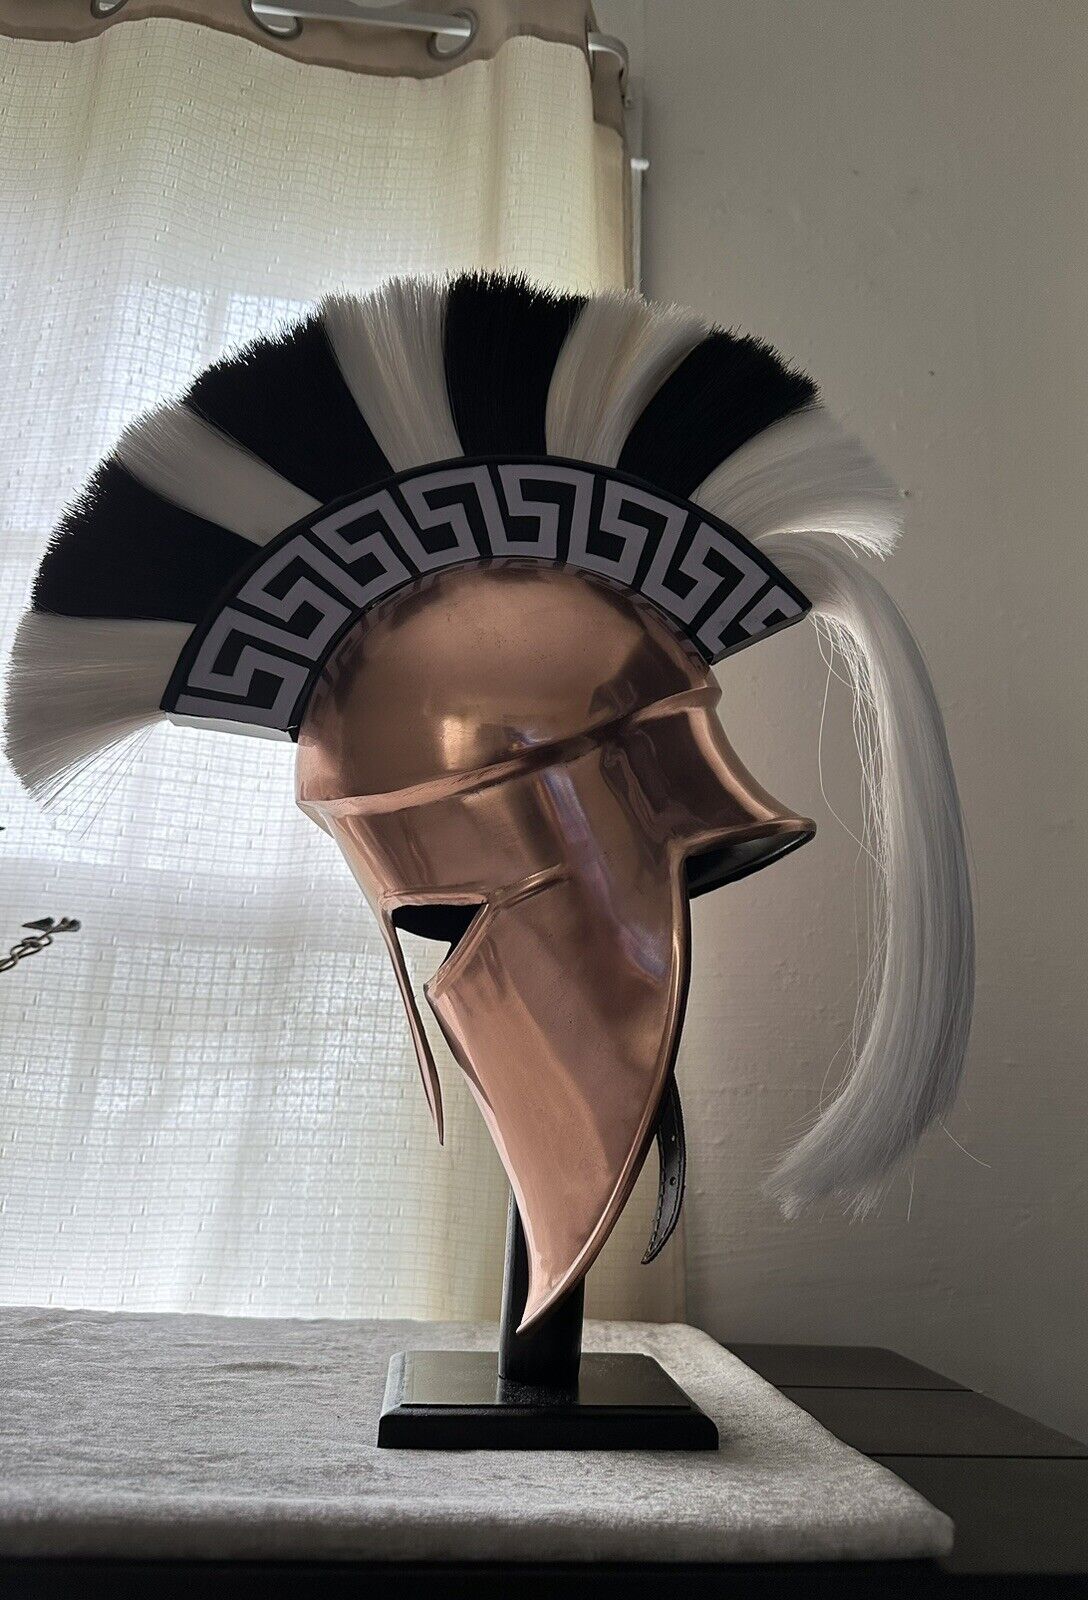 Greek Corinthian Helmet